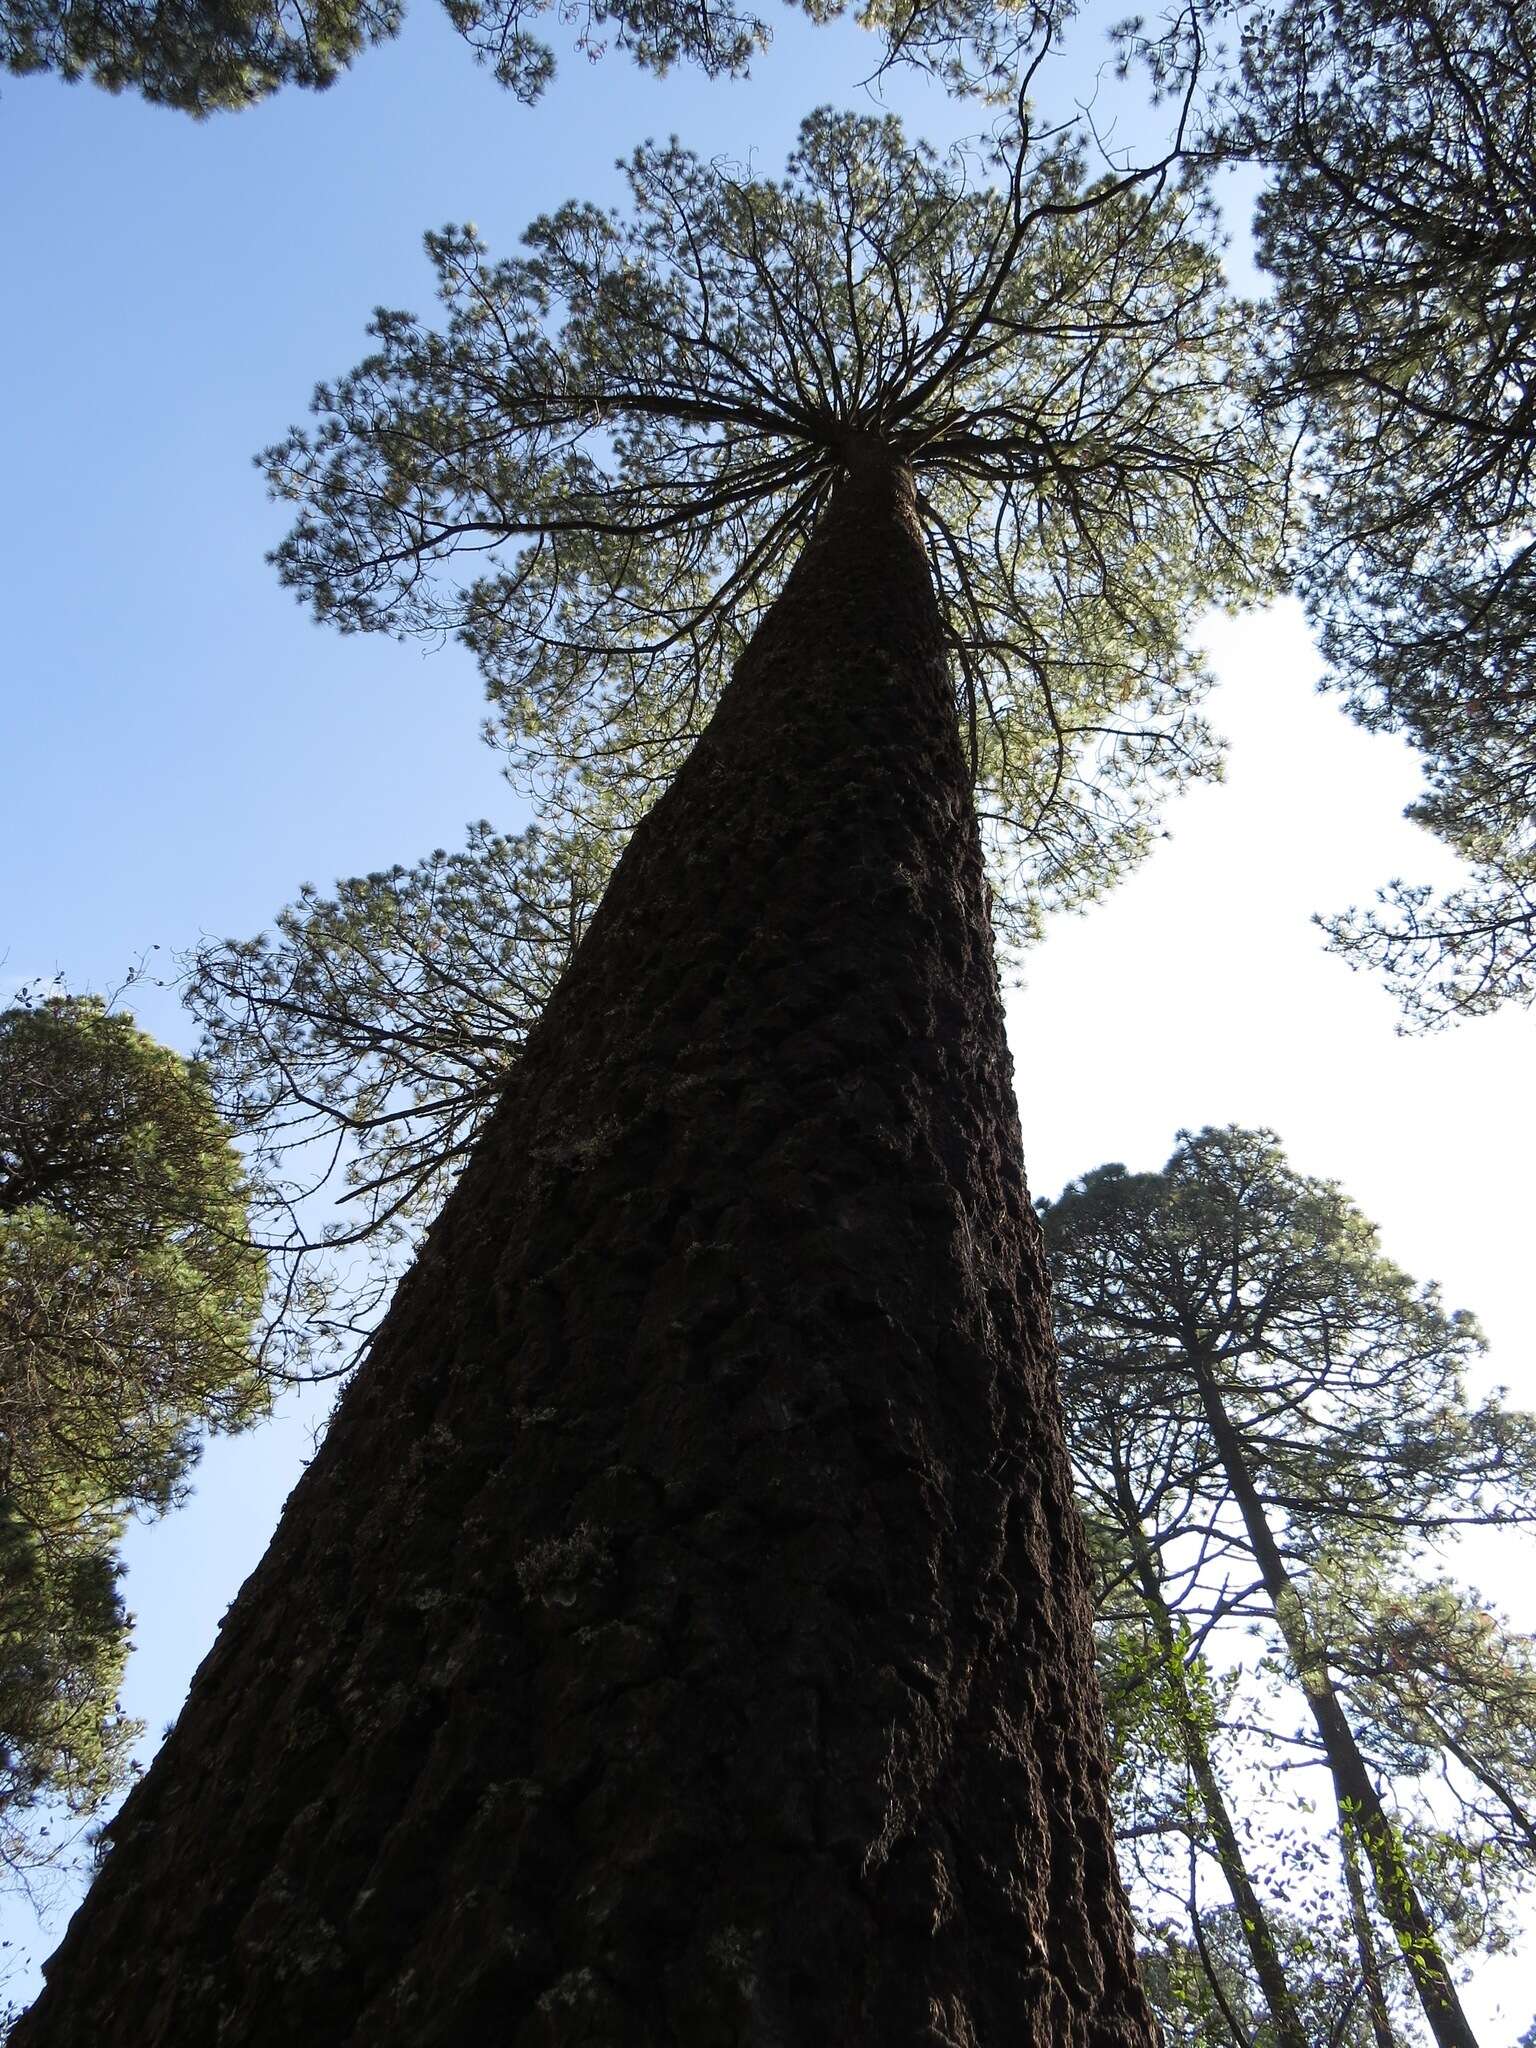 Image of Hartweg's Pine